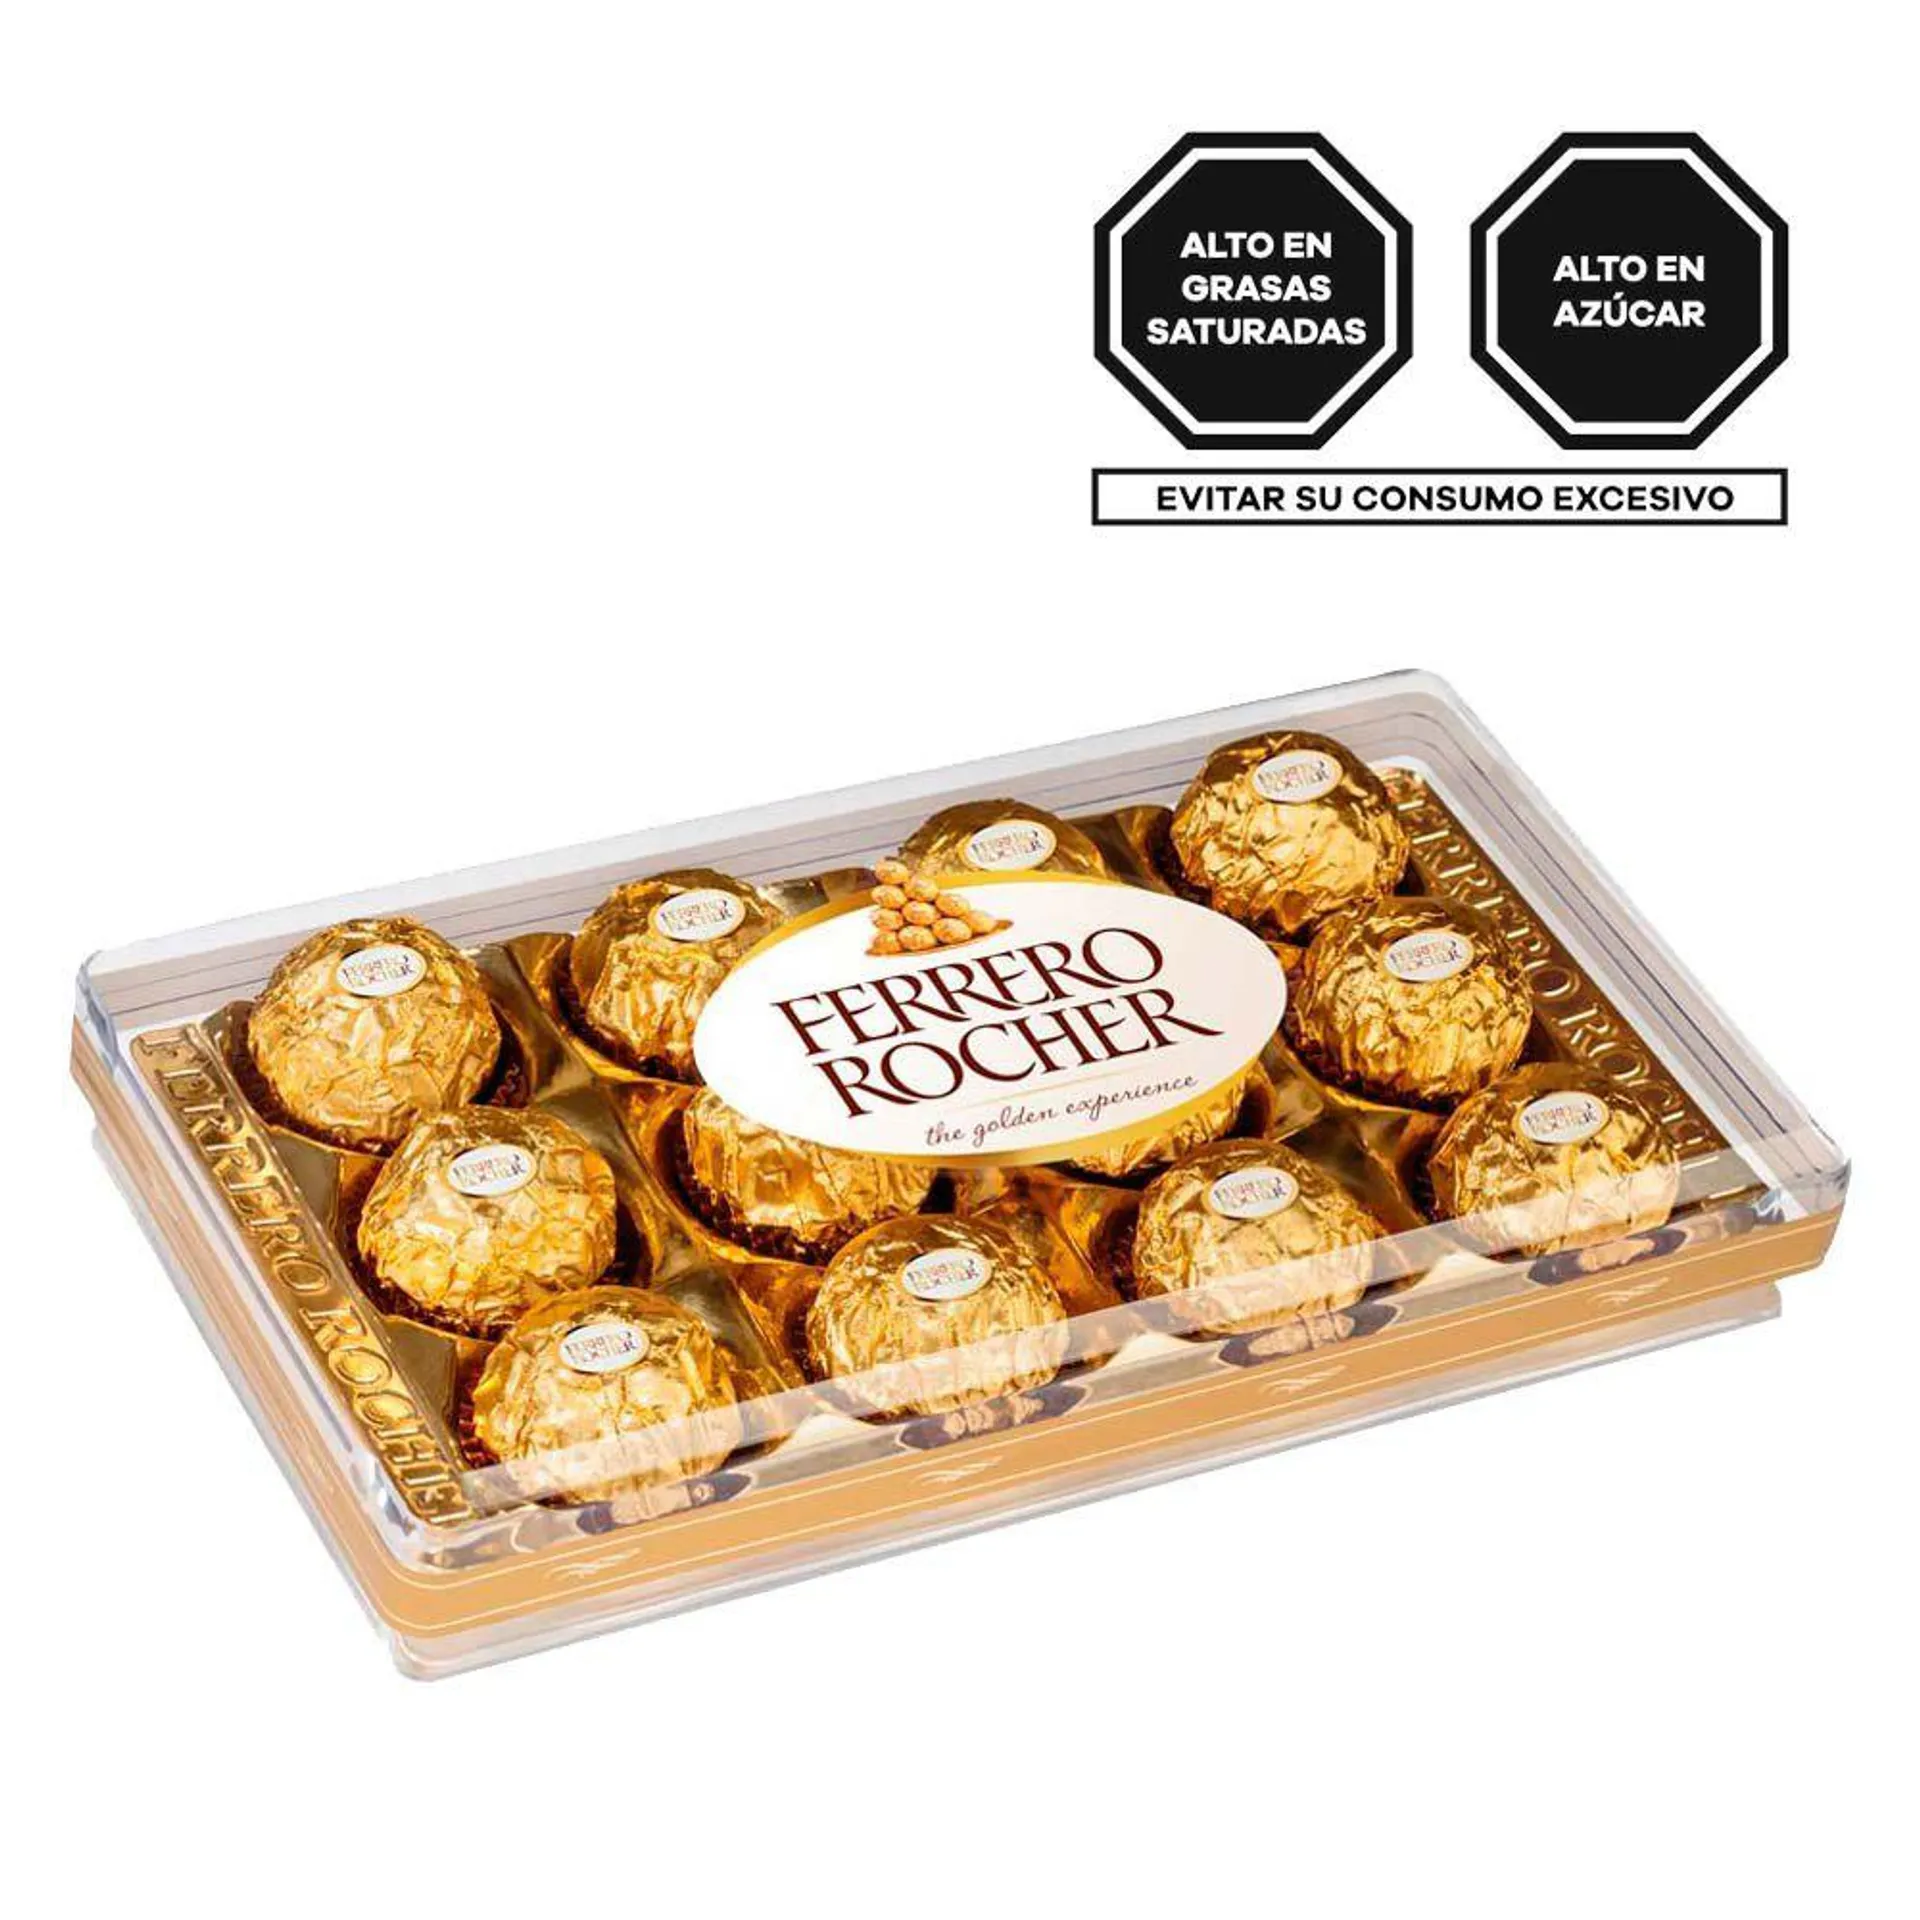 Ferrero Rocher 12 Unids.